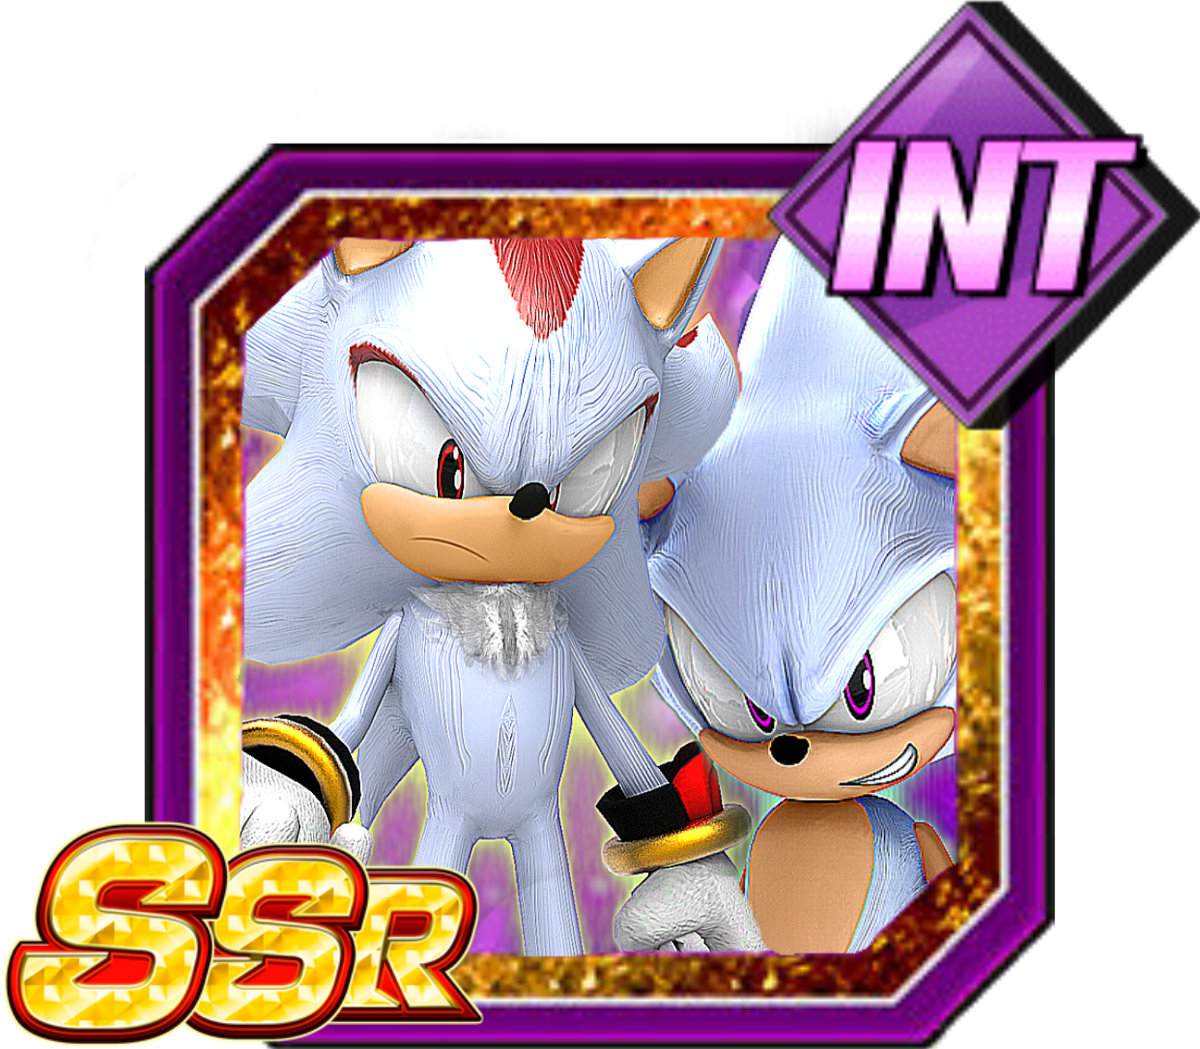 Jigokuu on X: LEGENDS LIMITED Hyper Sonic (Hyper Shadow Assist) Main  Ability:Hyper Shadic Fusion #Sonic #DBLegends  / X